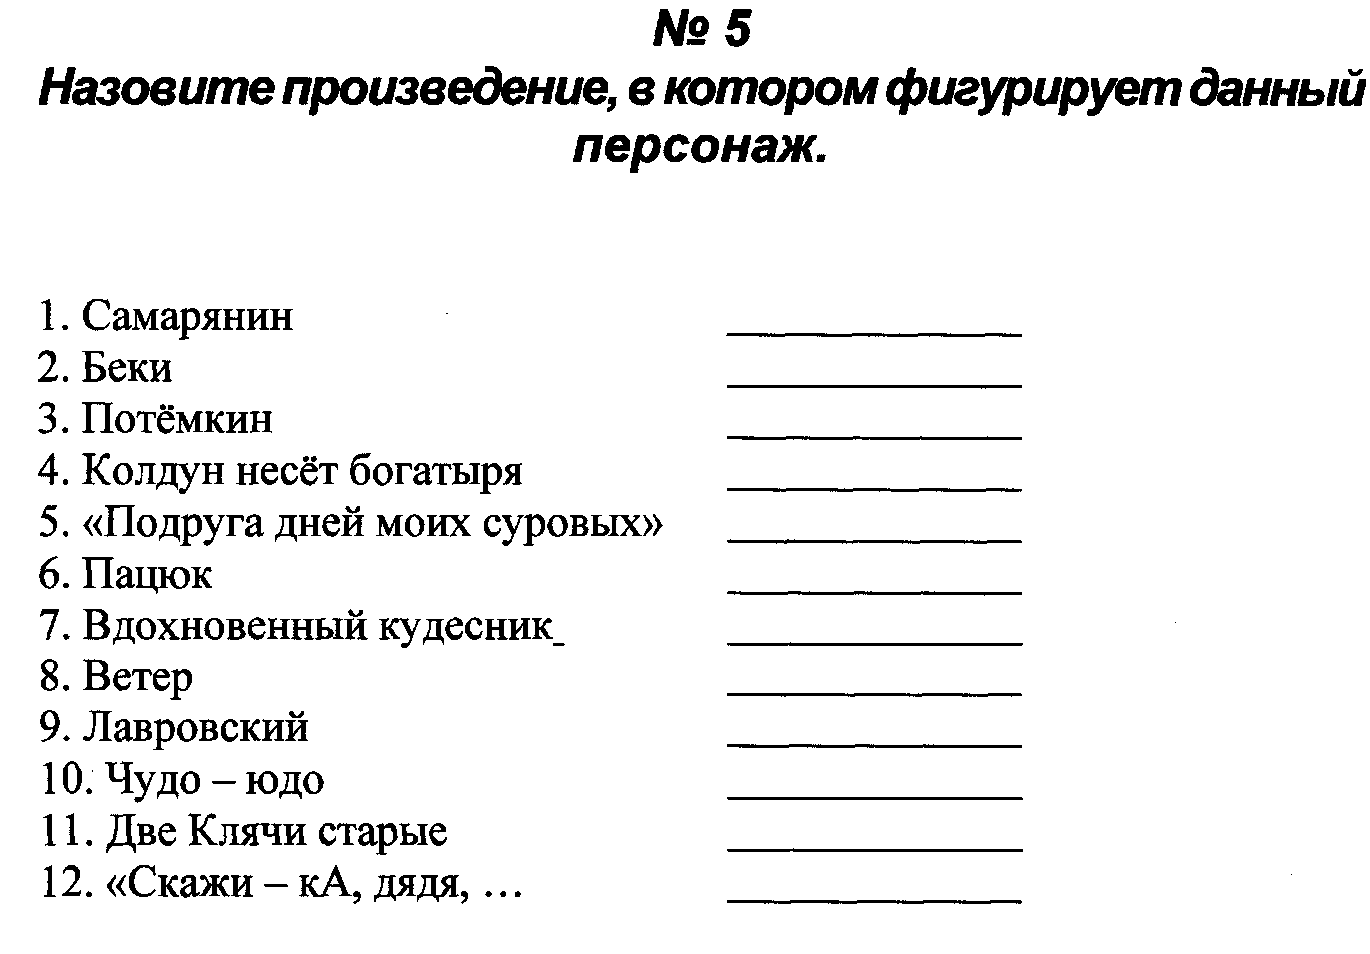 Компьютерный турнир по русскому языку .